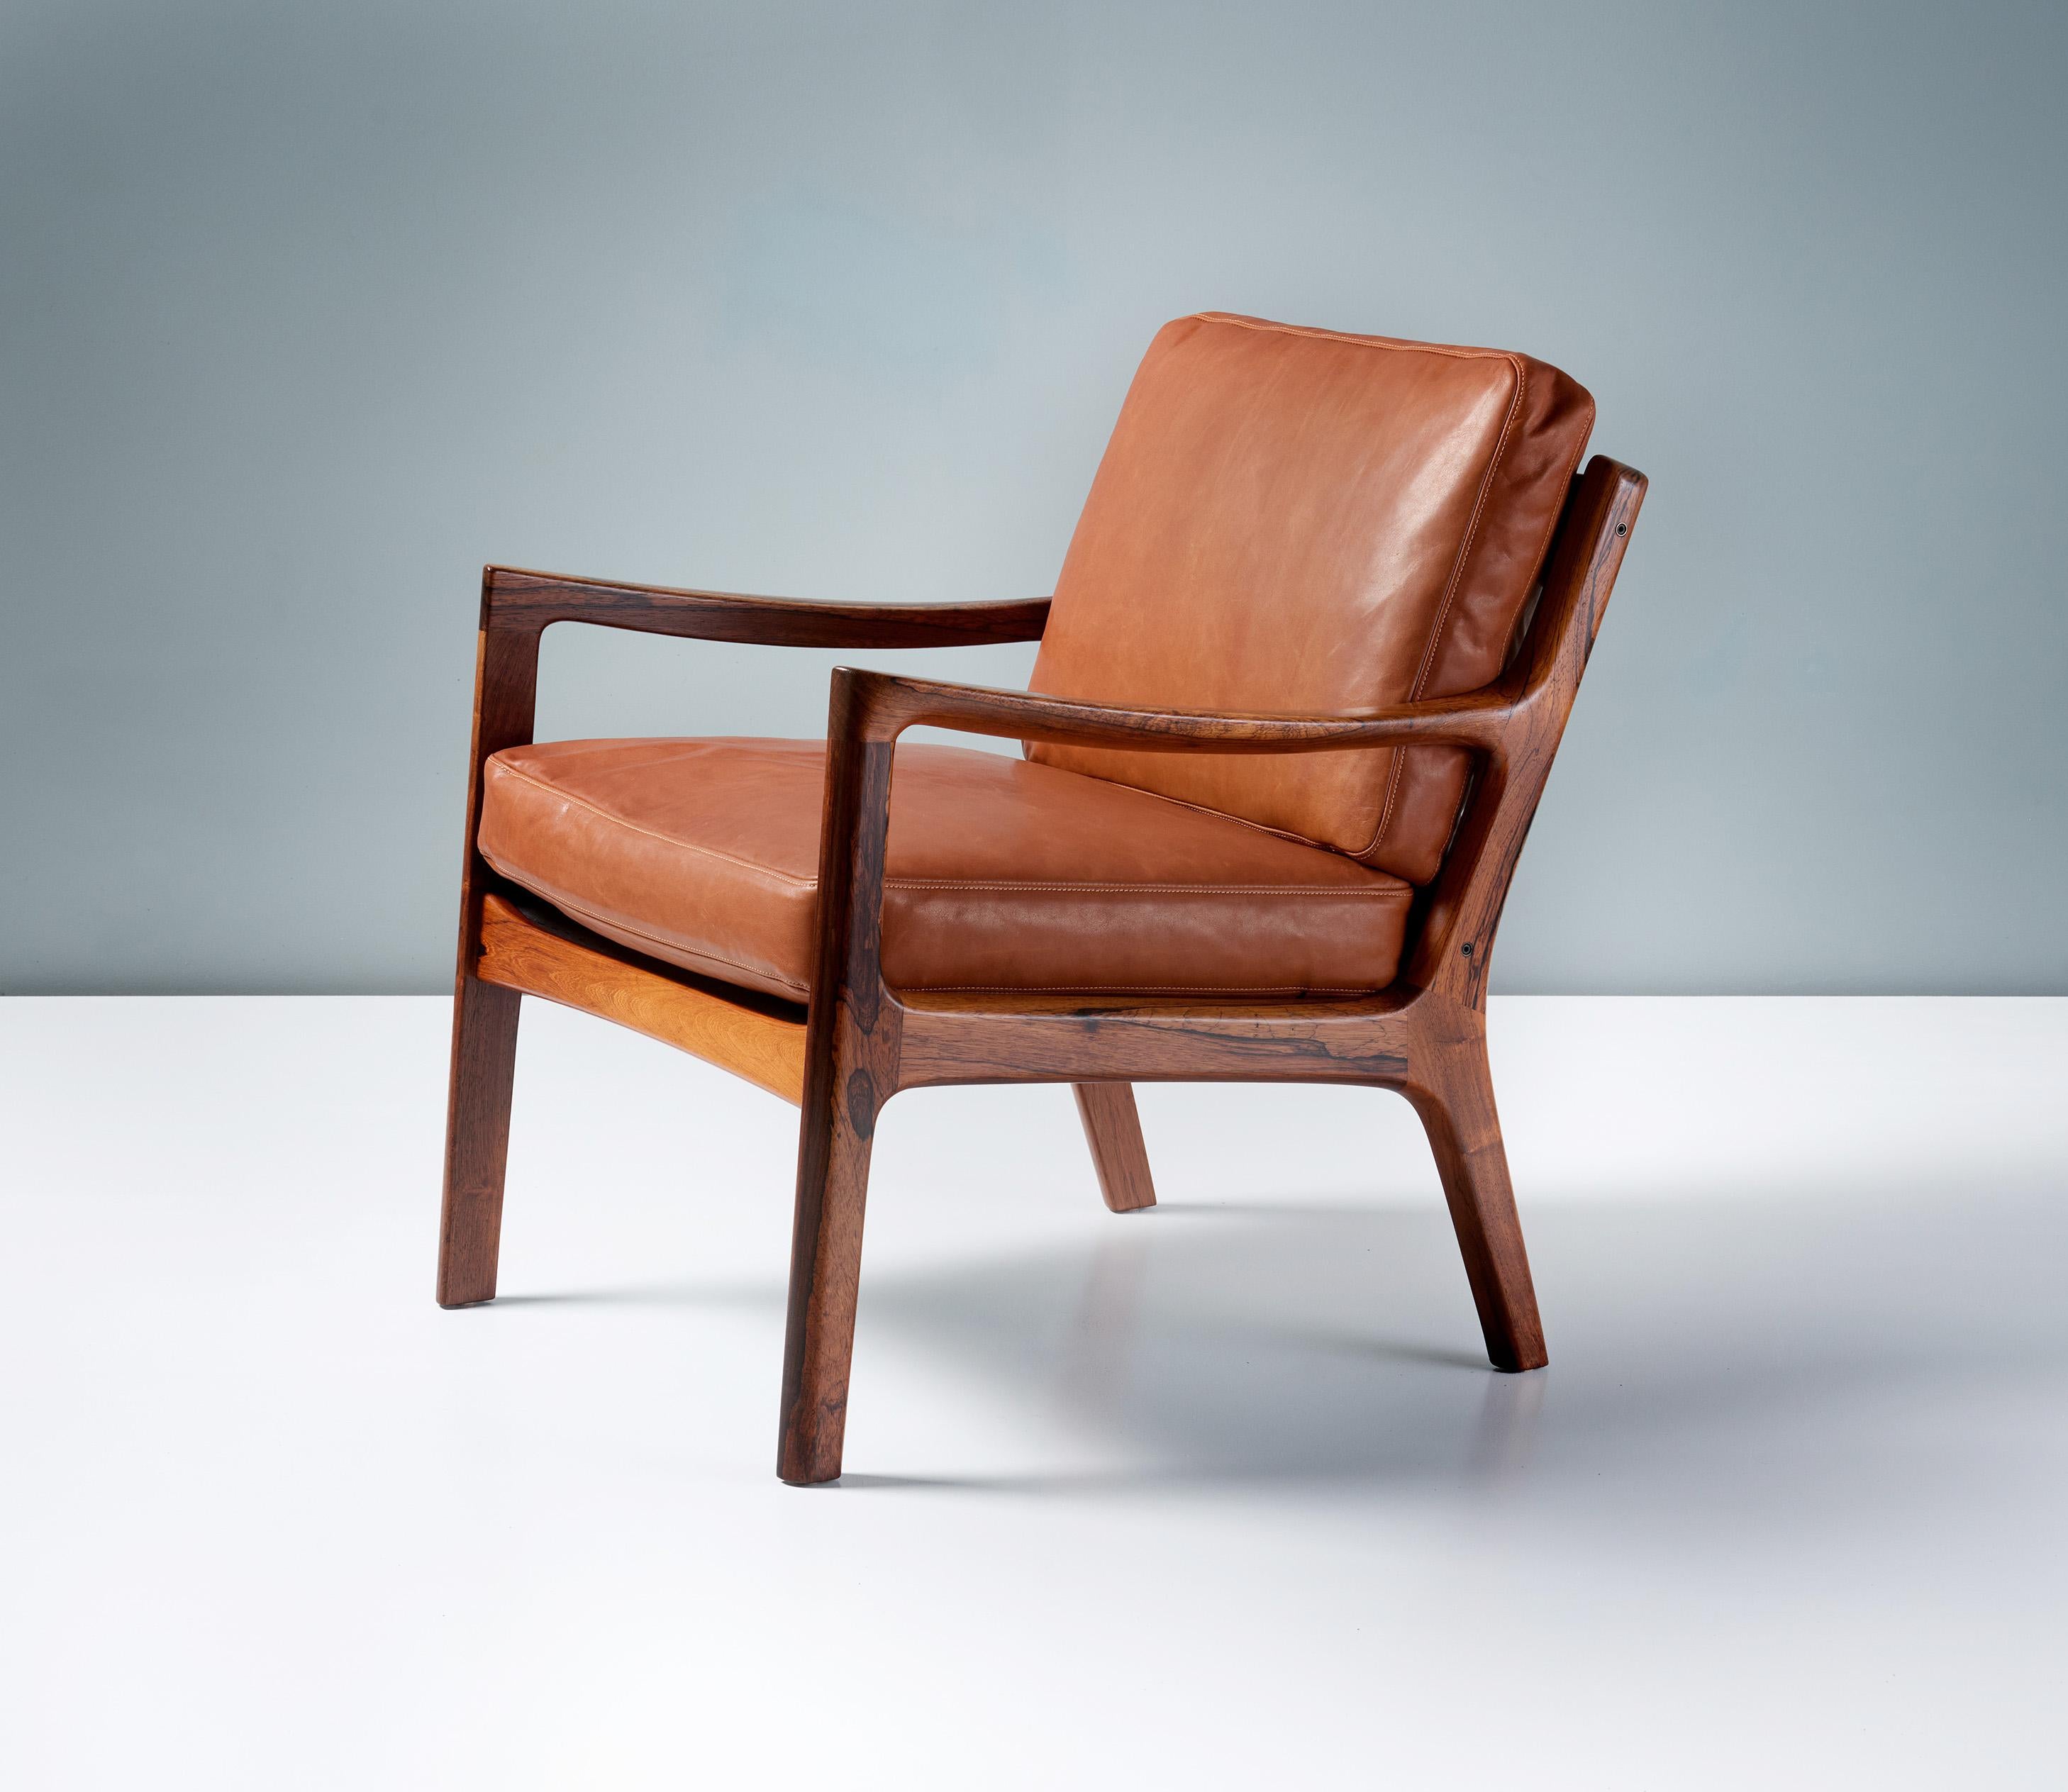 Ole Wanscher - Chaise longue Senator, c1960s

La série Senator, composée d'une chaise, d'un canapé et d'un rocking-chair, a été produite dans le cadre de la collaboration de fin de carrière de Wanscher, qui a créé des modèles plus minimalistes et